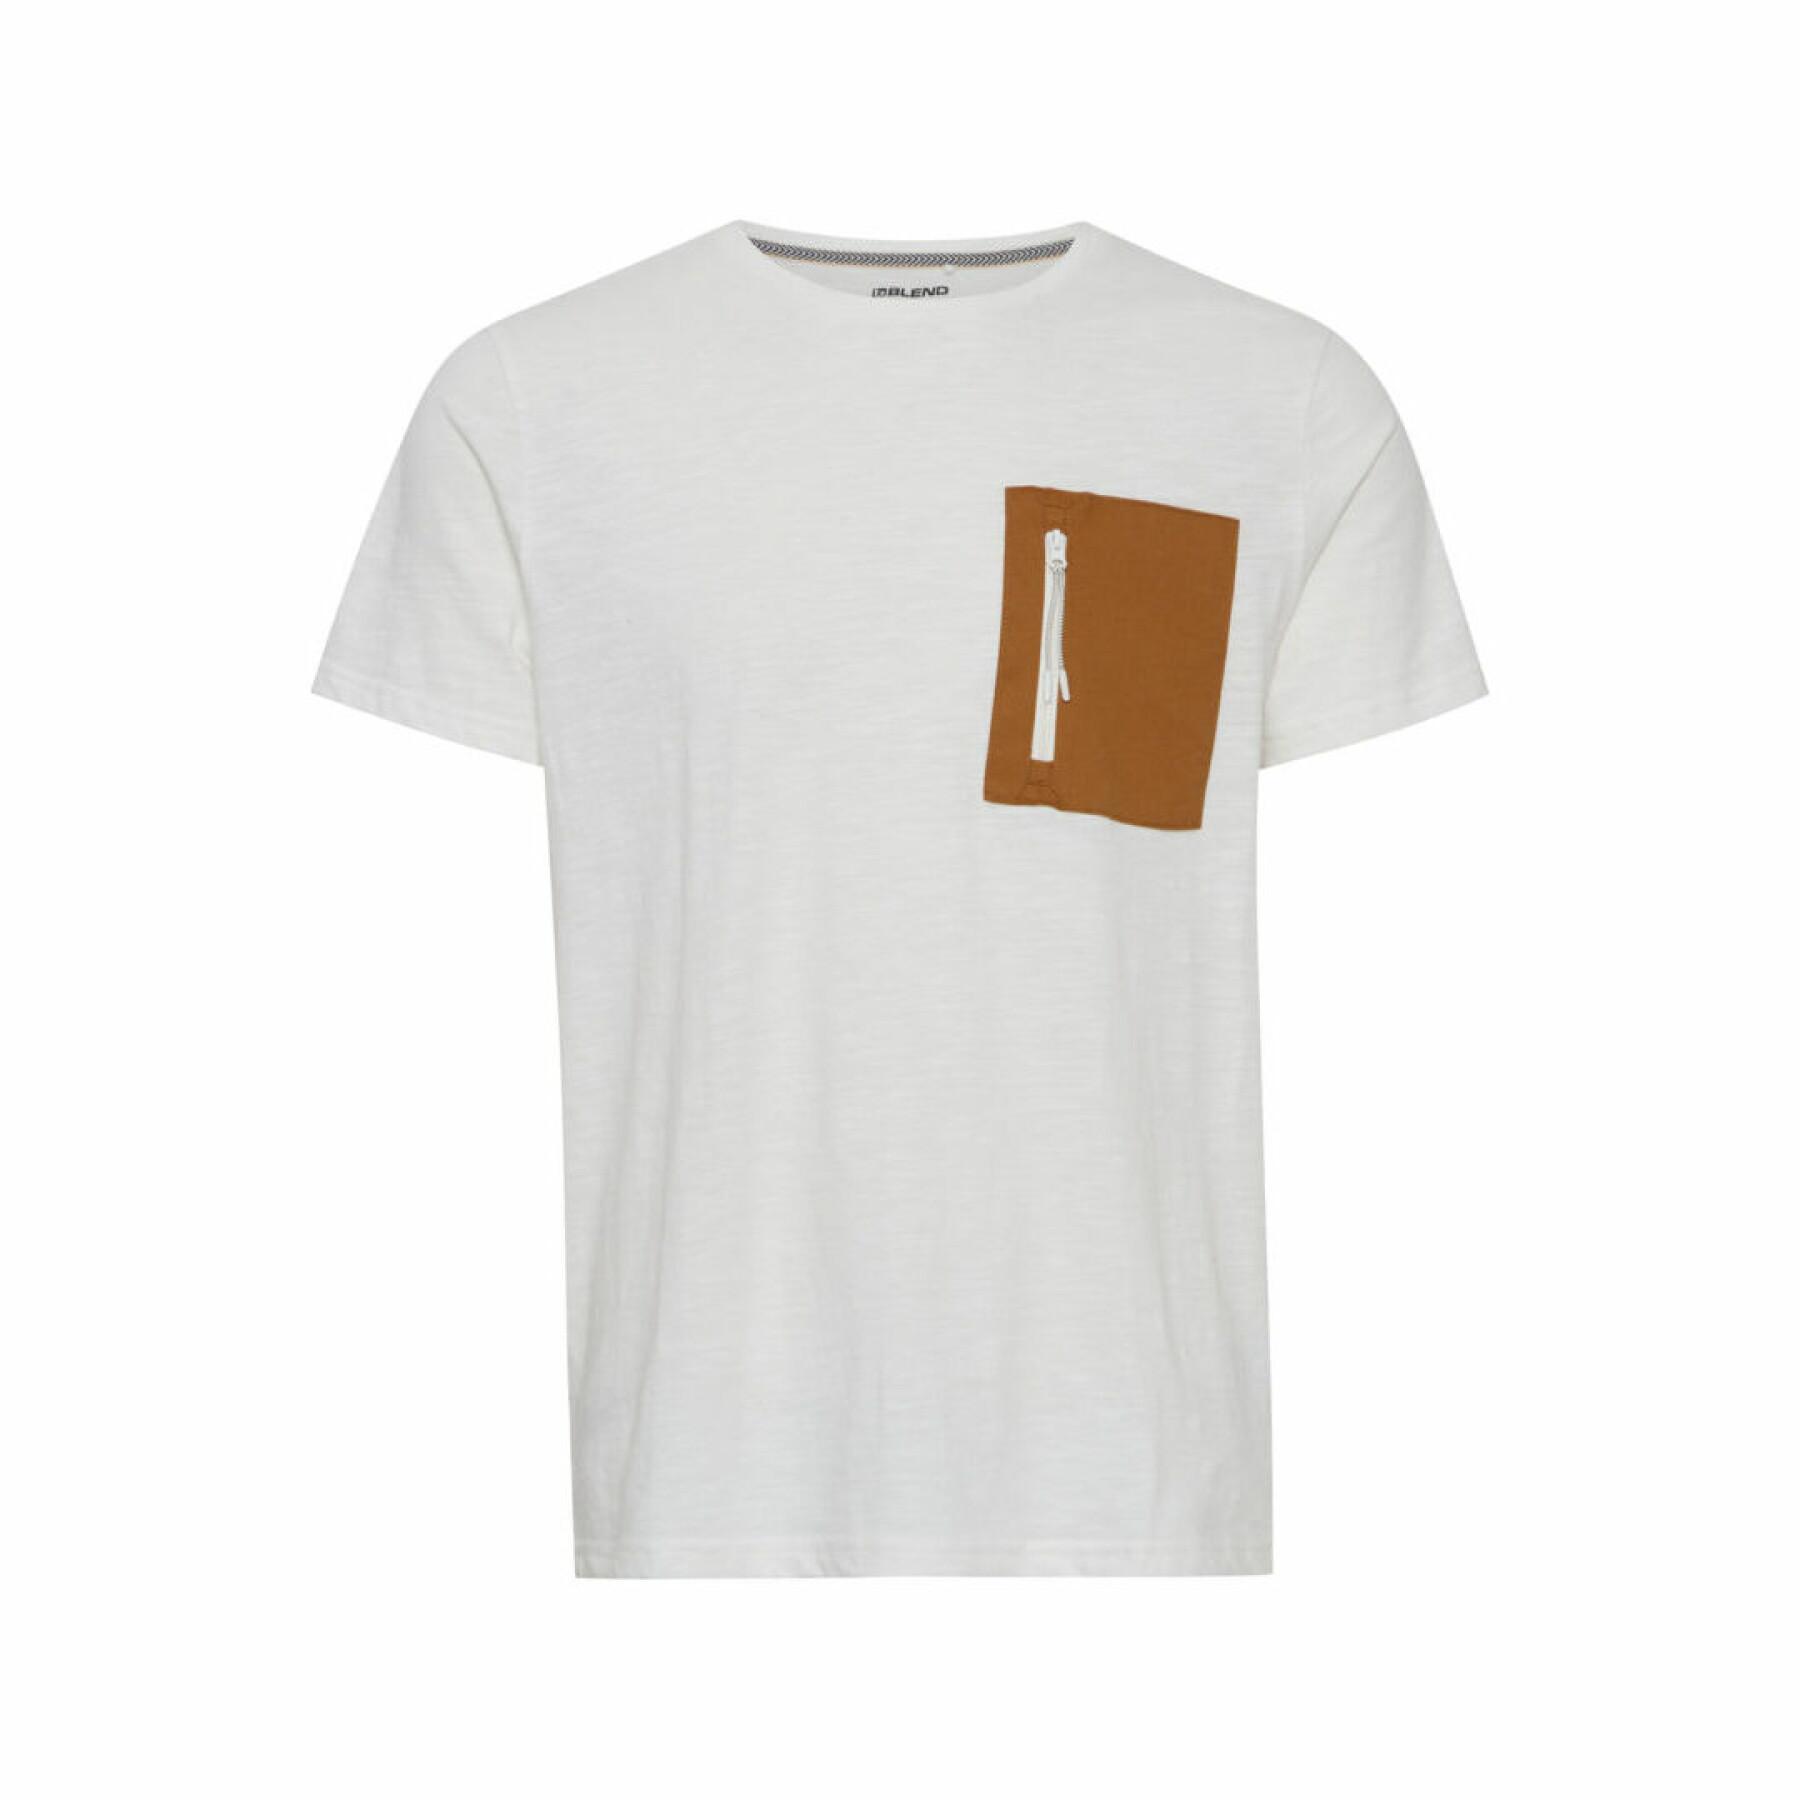 T-shirt Blend Regular fit - T-shirts & Polo shirts - Clothing - Men